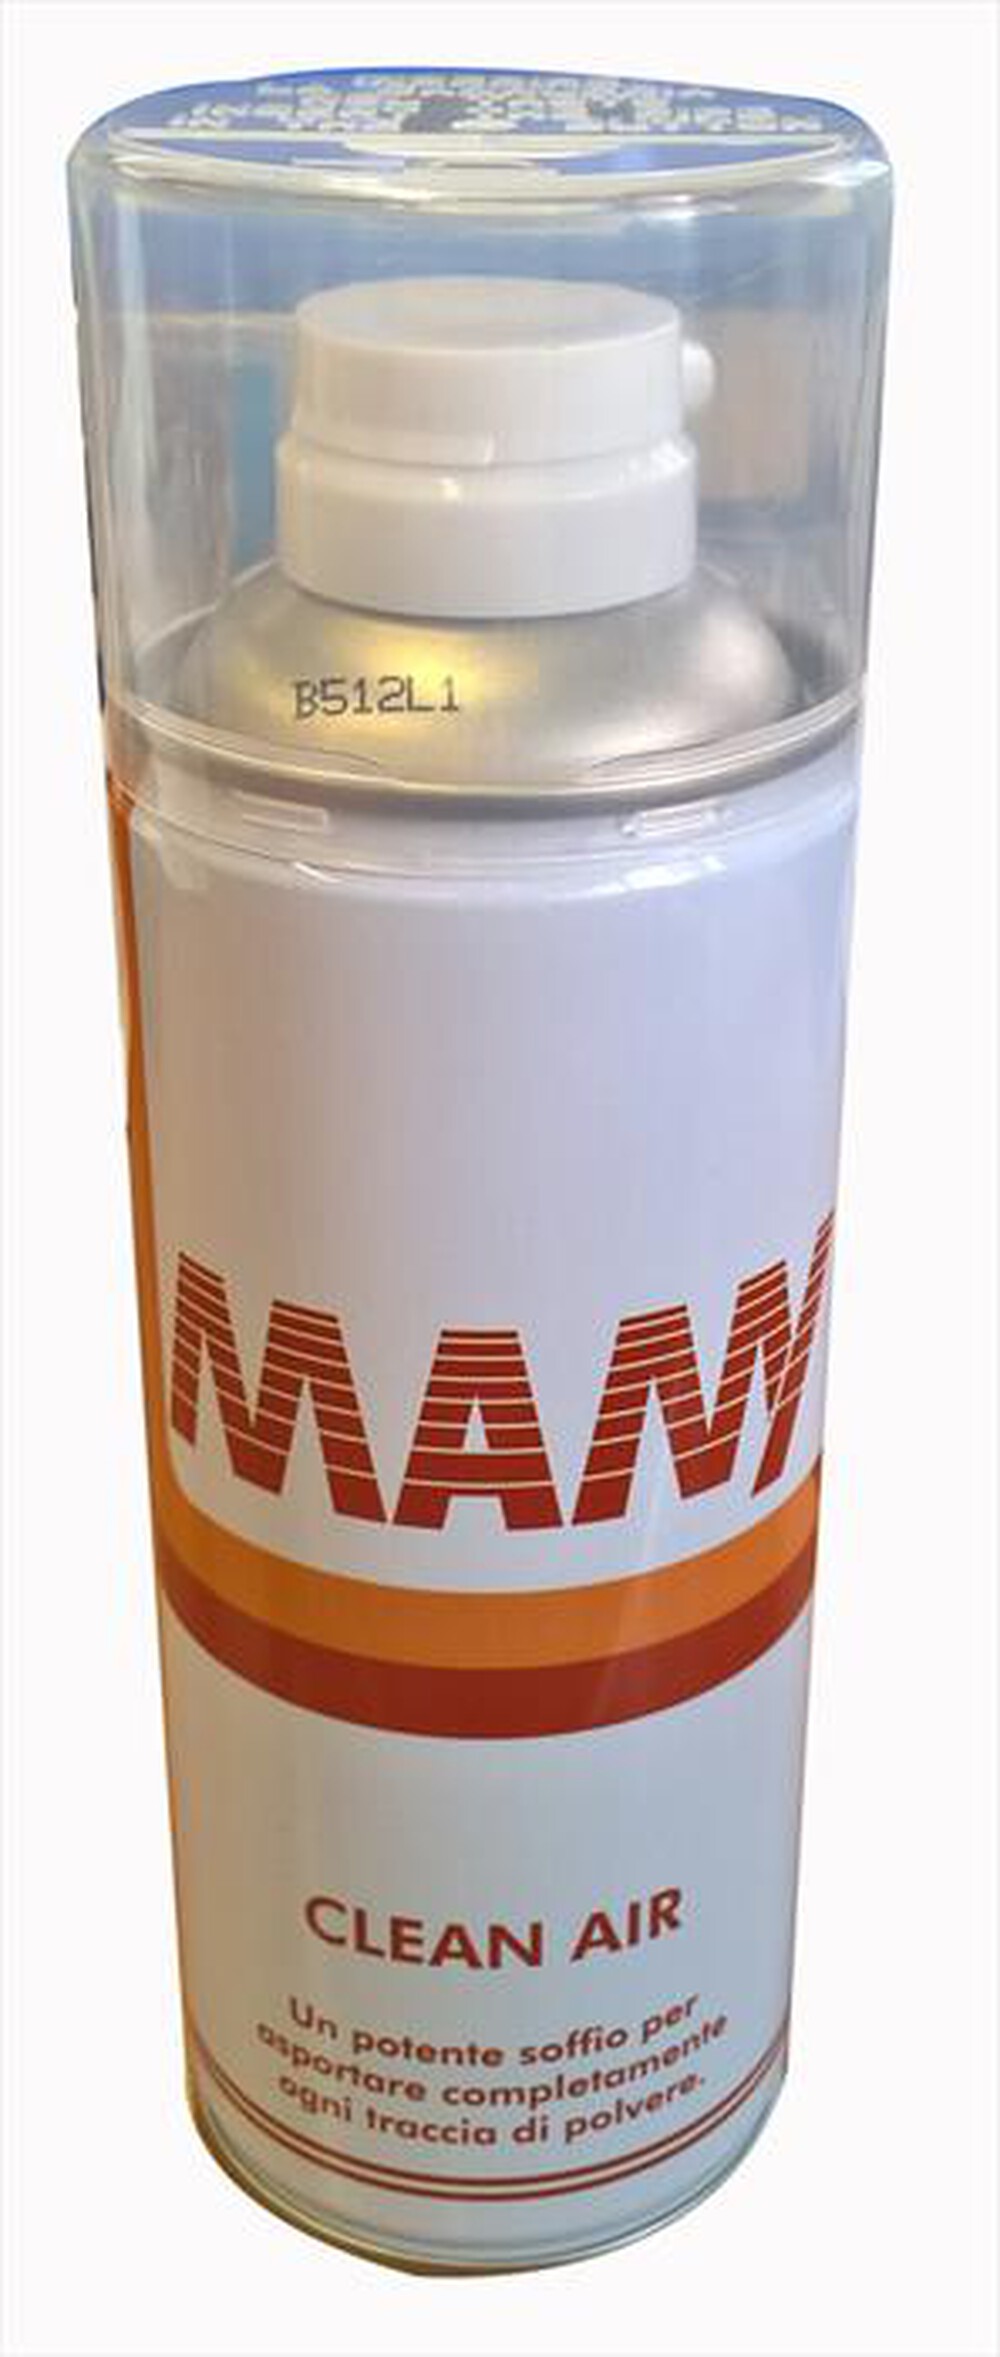 "HAMA - 5000016 Mamy - bomboletta aria compressa 400 ml-BIANCO/ROSSO"